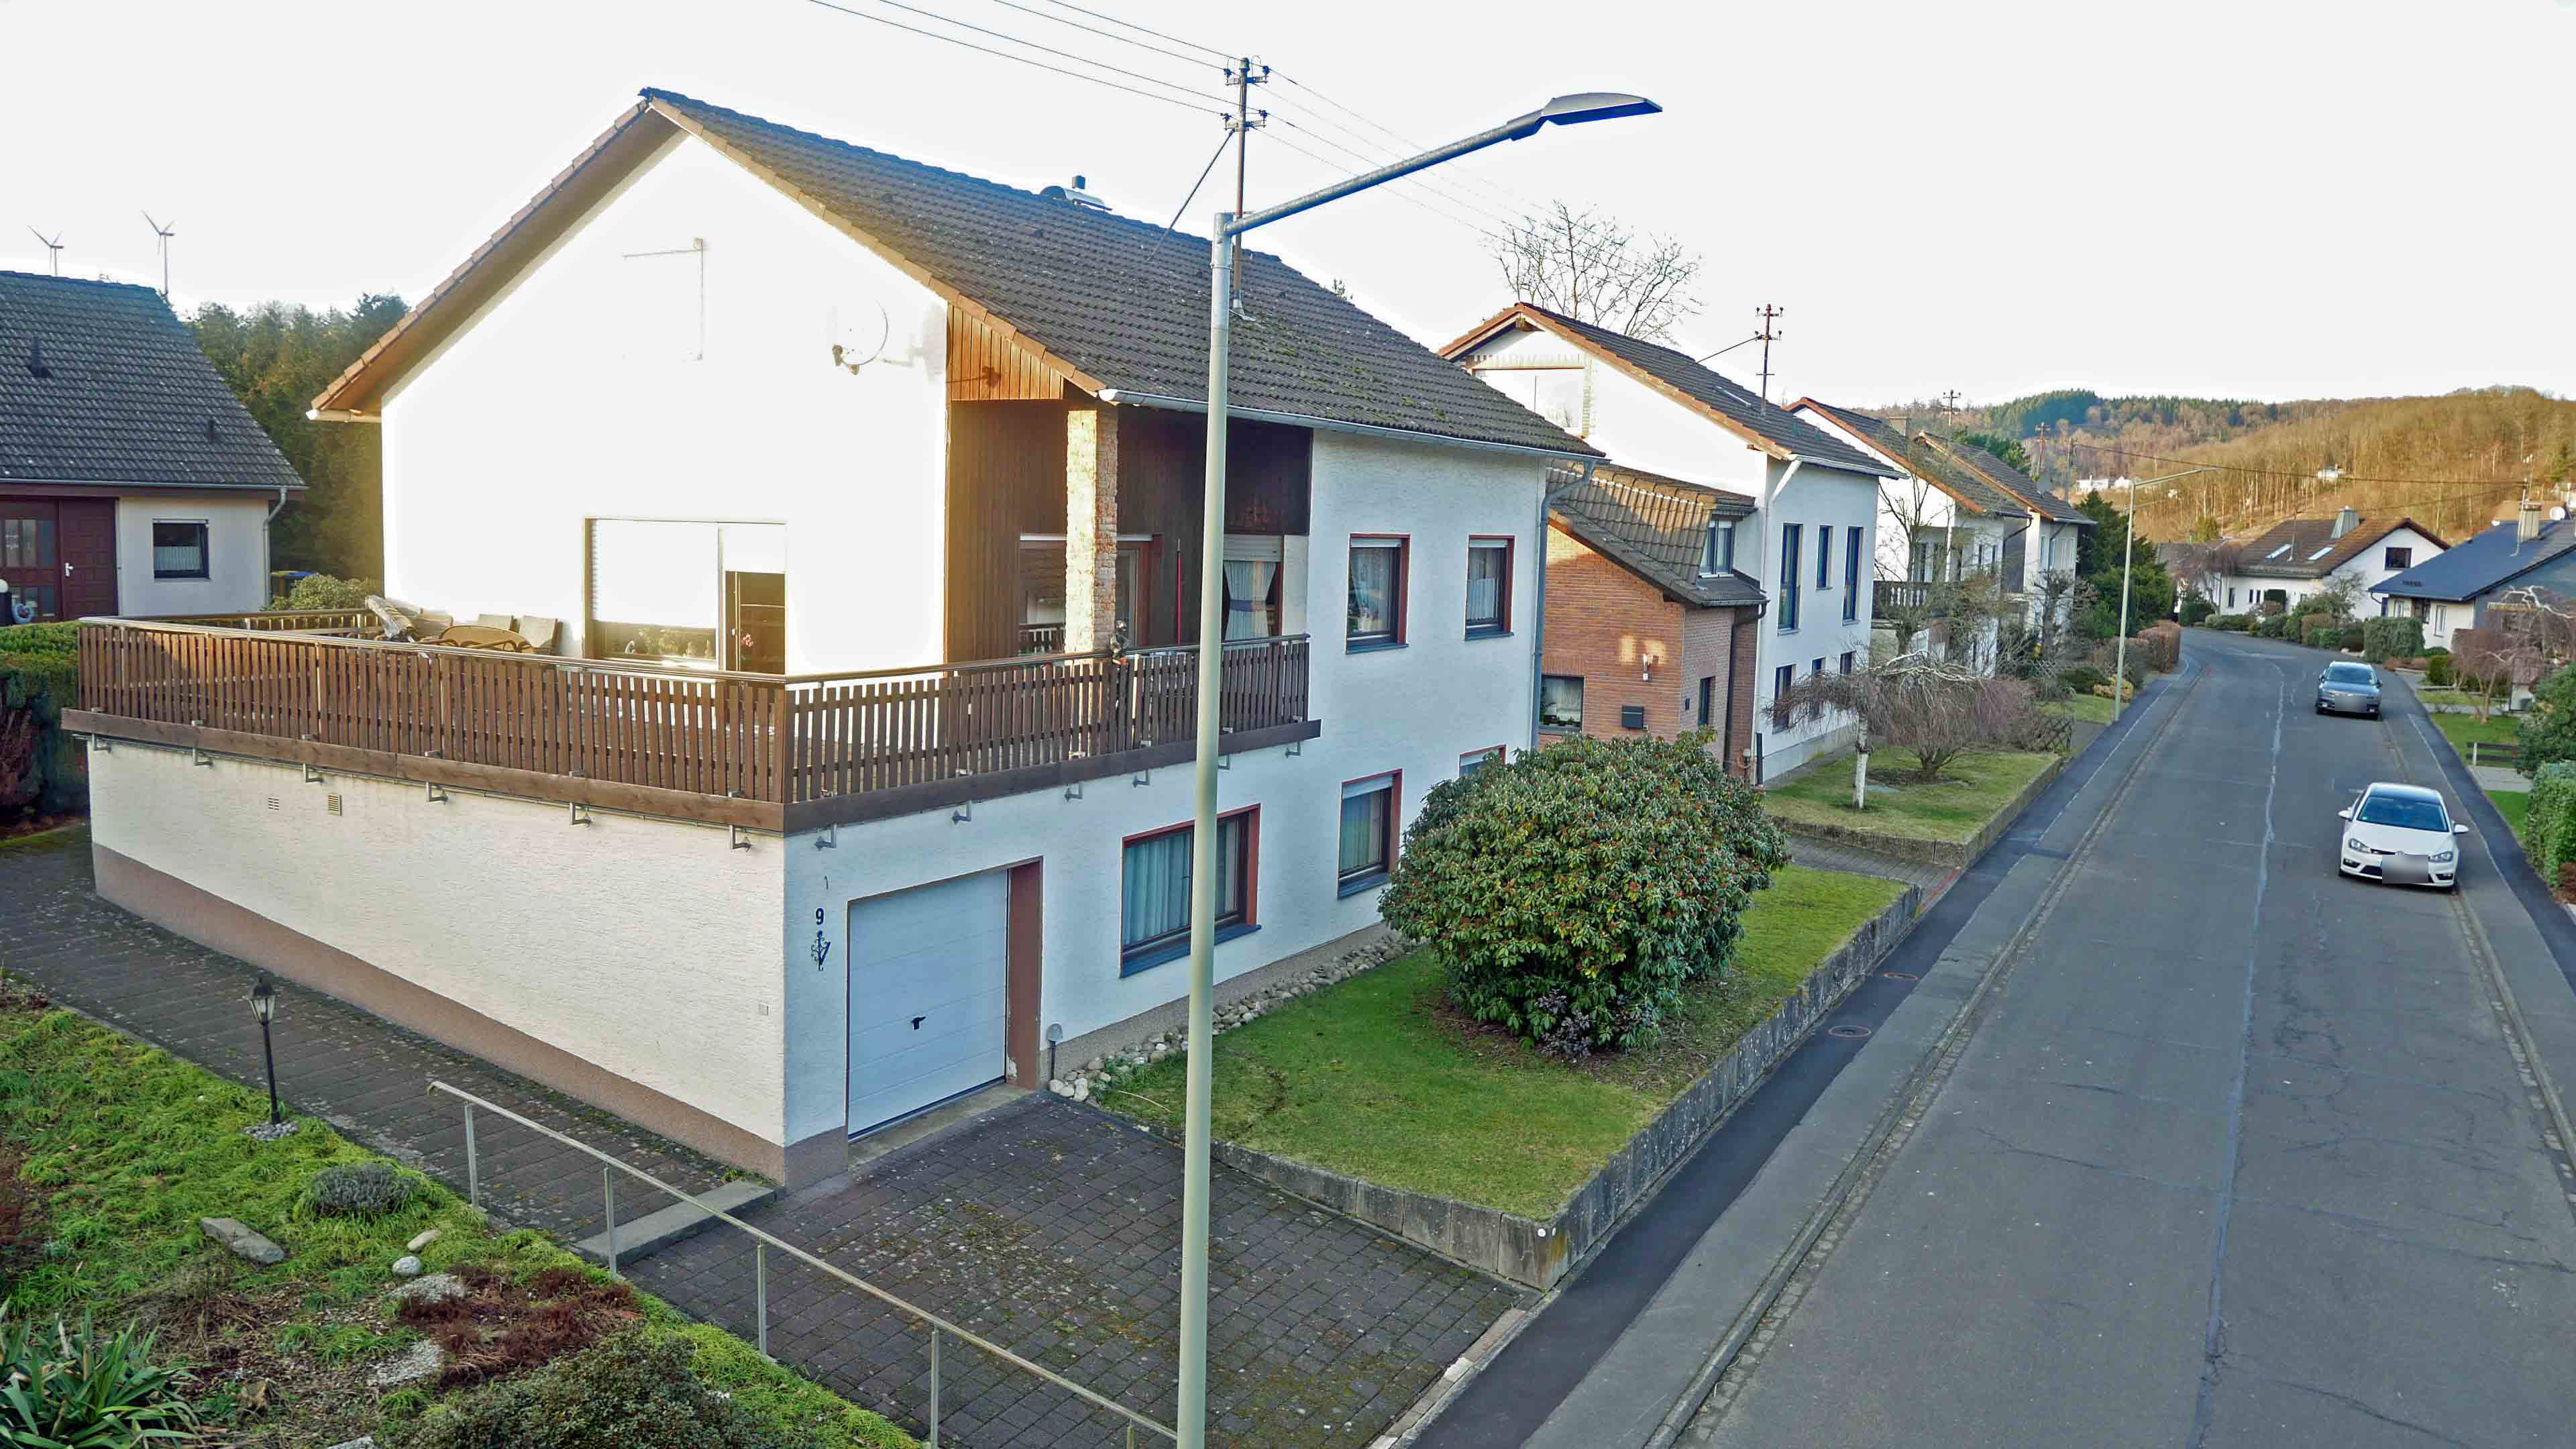 Freudenberg-Büschergrund: EFH mit Terrasse, Garten und Garage, ruhige Lage in einer Wohnstraße